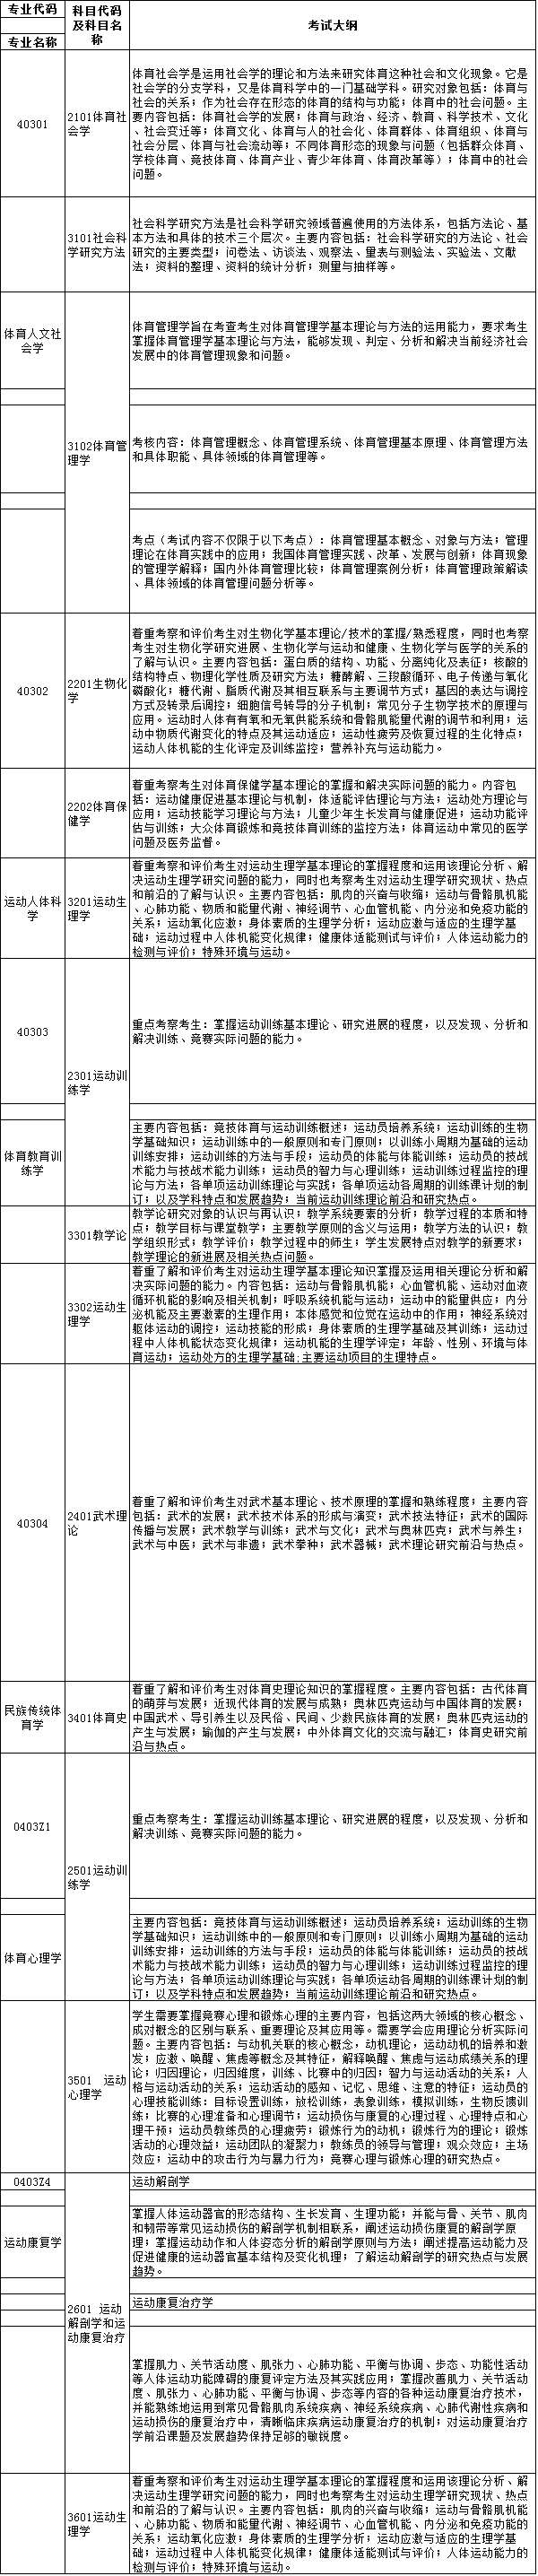 天津体育学院2022年博士研究生初试科目招生考试大纲